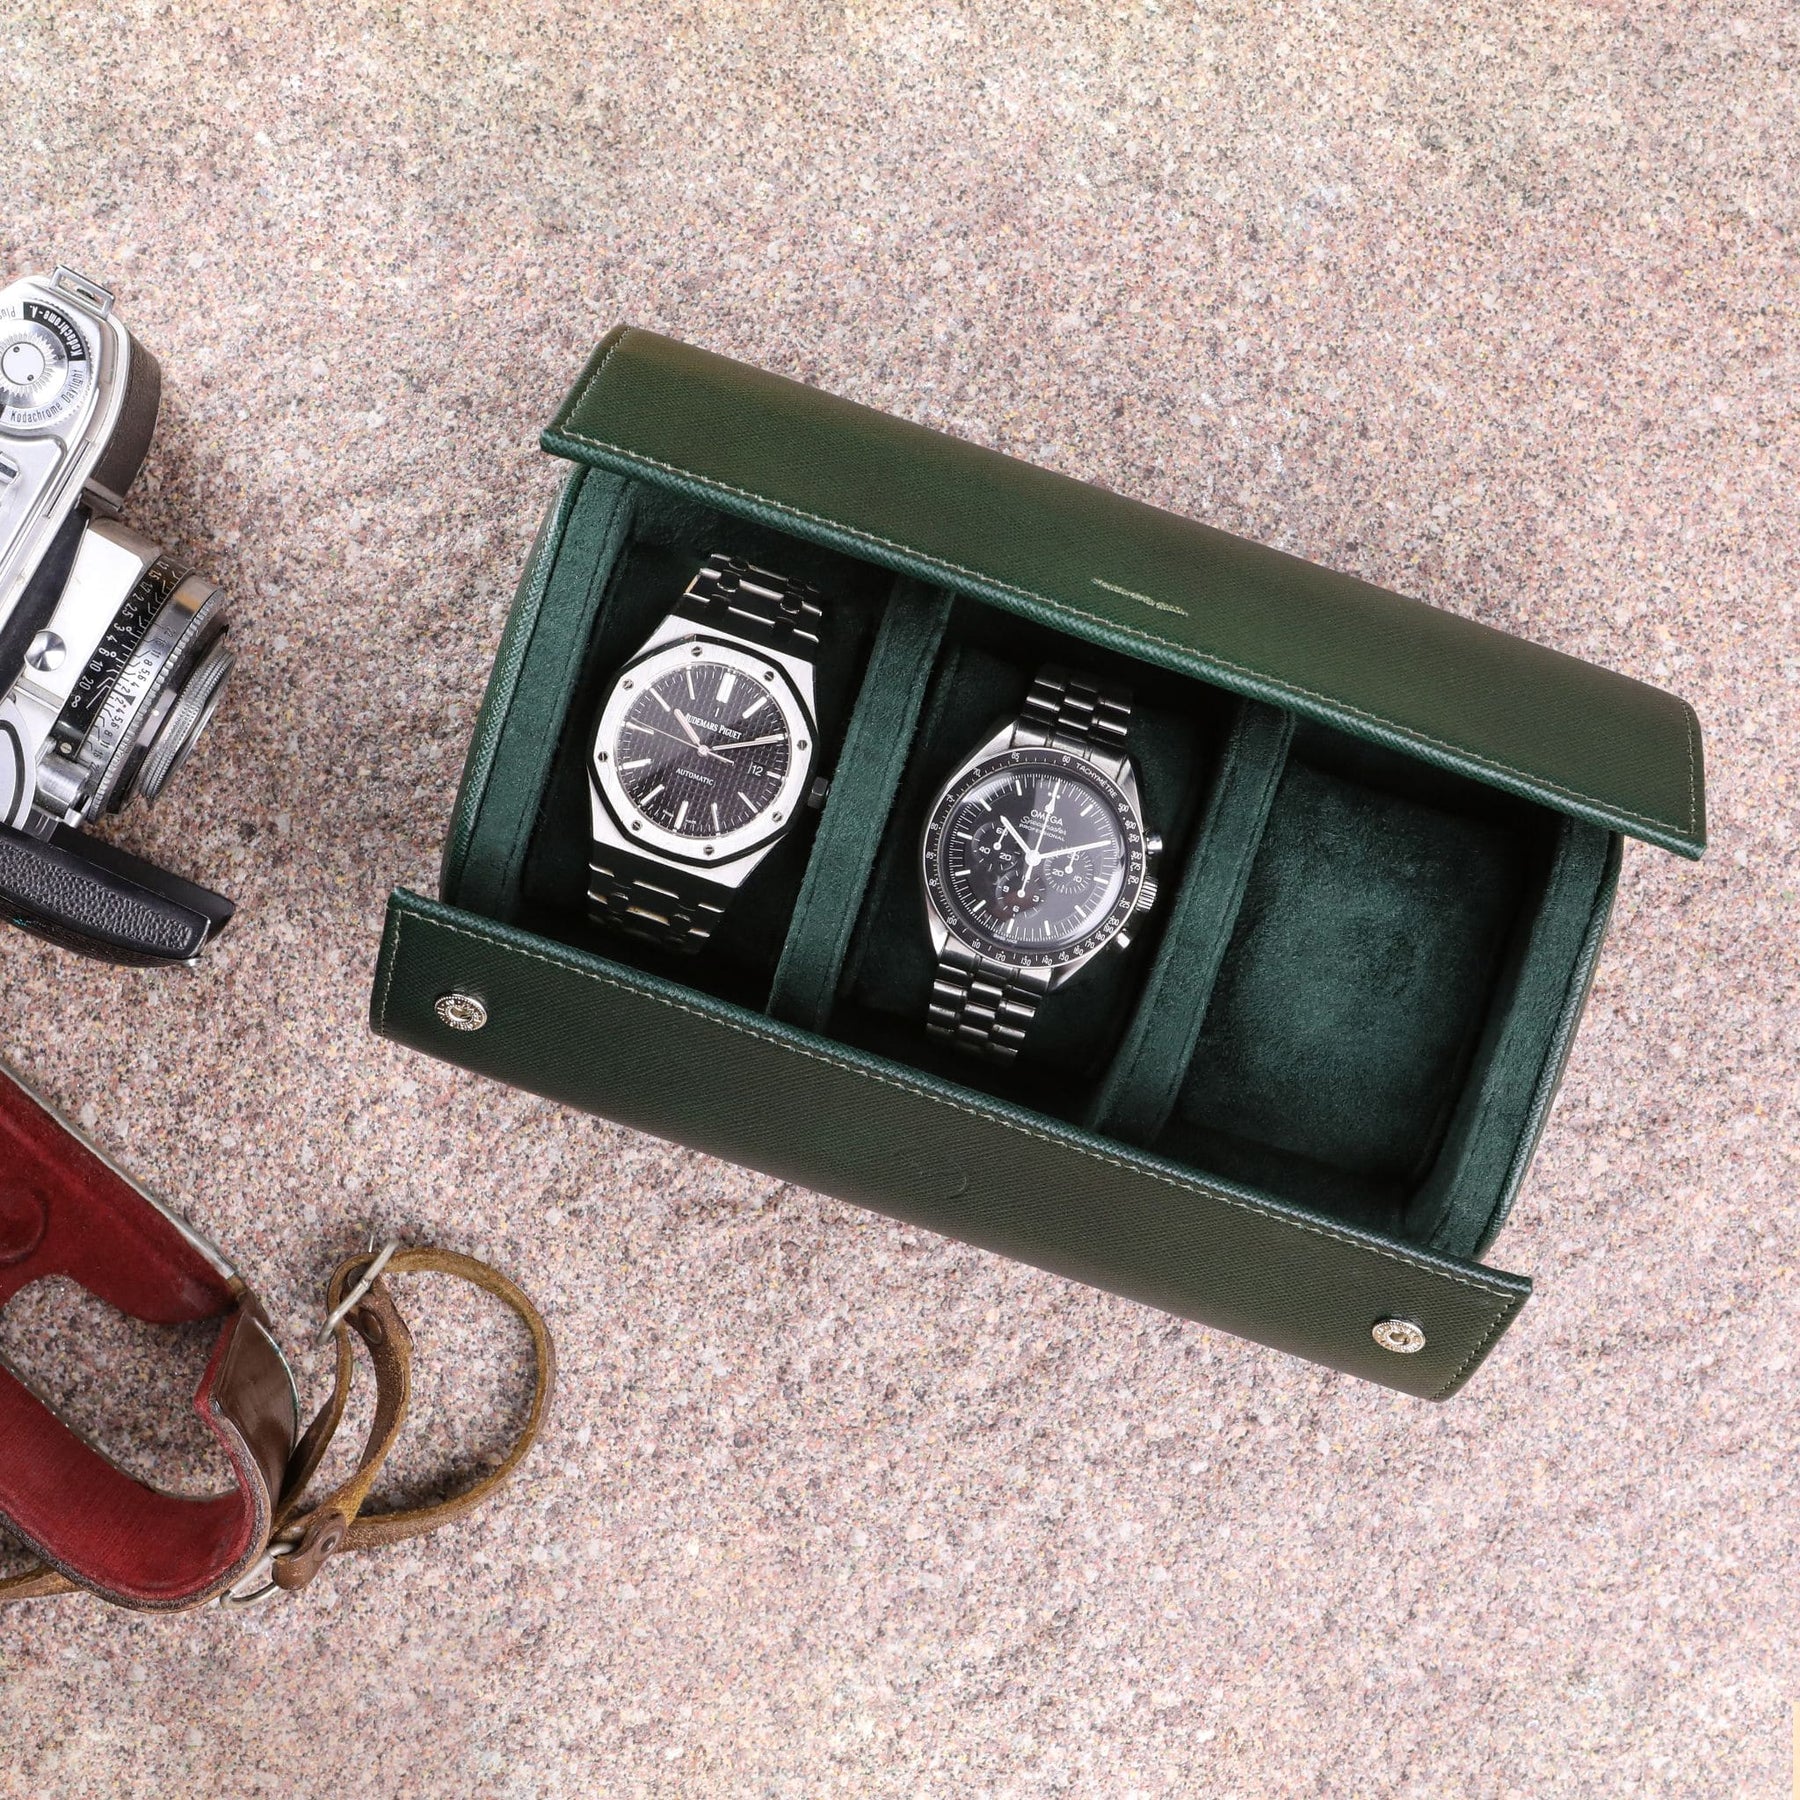 Rotolo porta orologi da 3 in pelle saffiano verde con Audemars Piguet Royal Oak e Omega Speedmaster Moonwatch all'interno e macchina fotografica vintage al lato sinistro